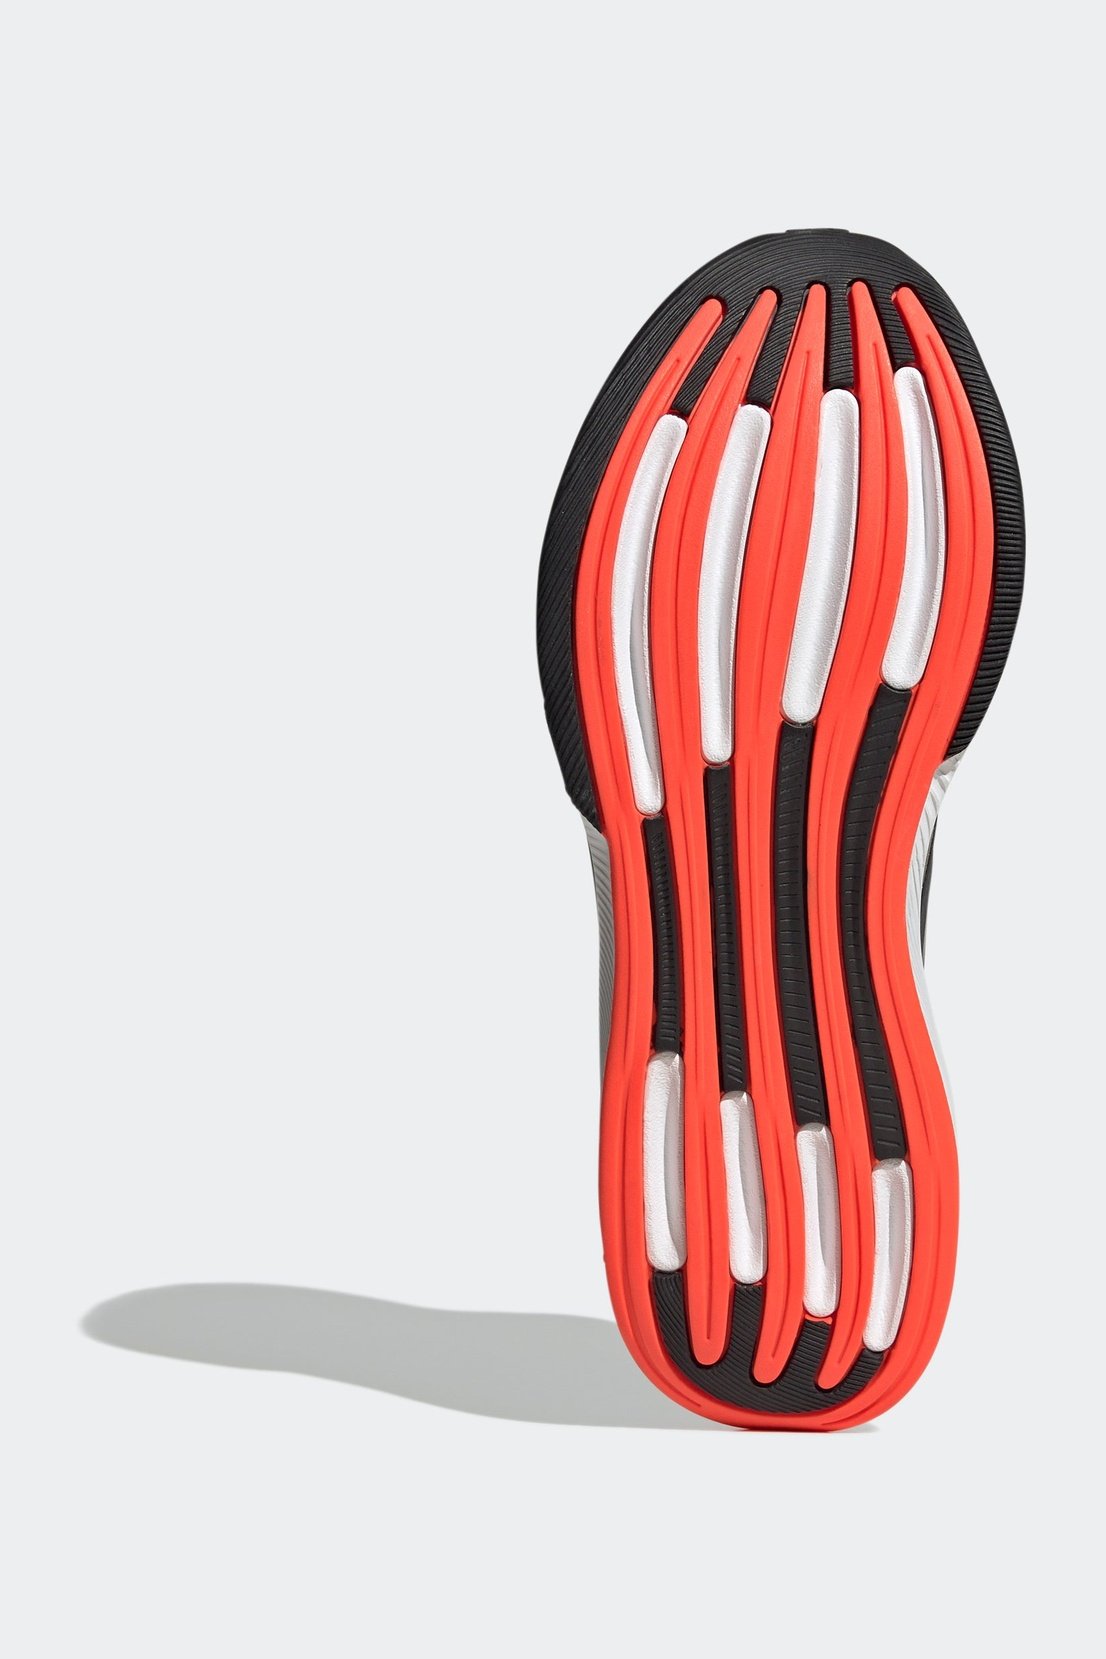 נעלי ספורט לגברים RESPONSE SUPER בצבע אפור כהה ואדום